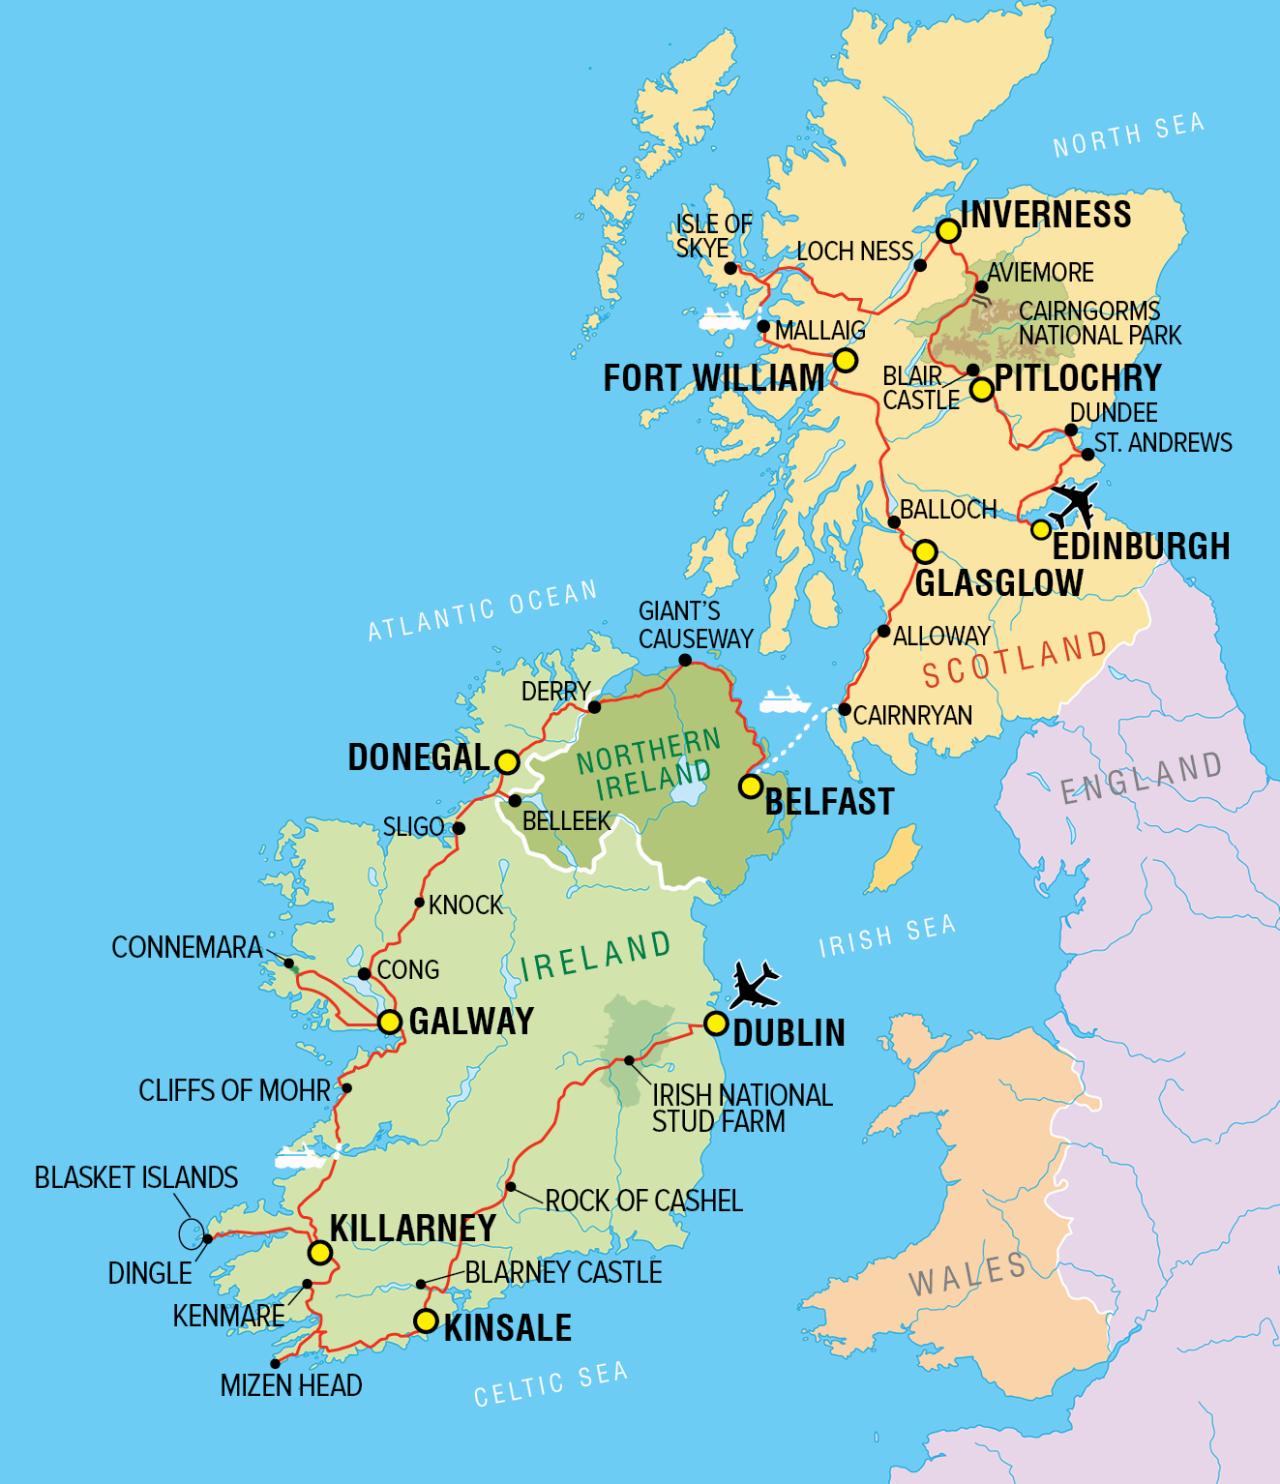 tour scotland and ireland